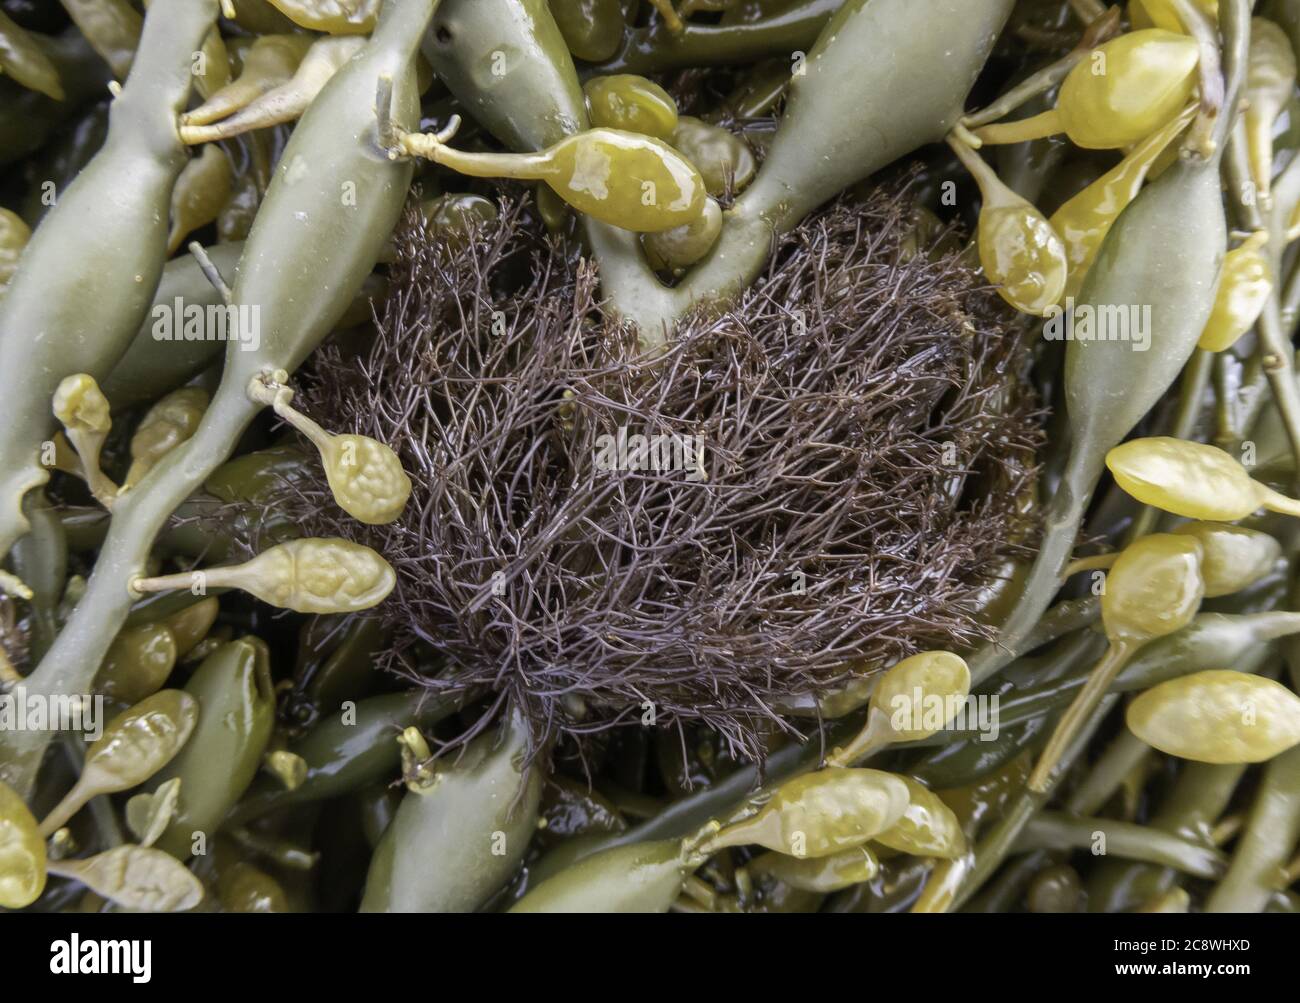 Polysiphonia lanosa on Knotted, june 2020 | usage worldwide Stock Photo